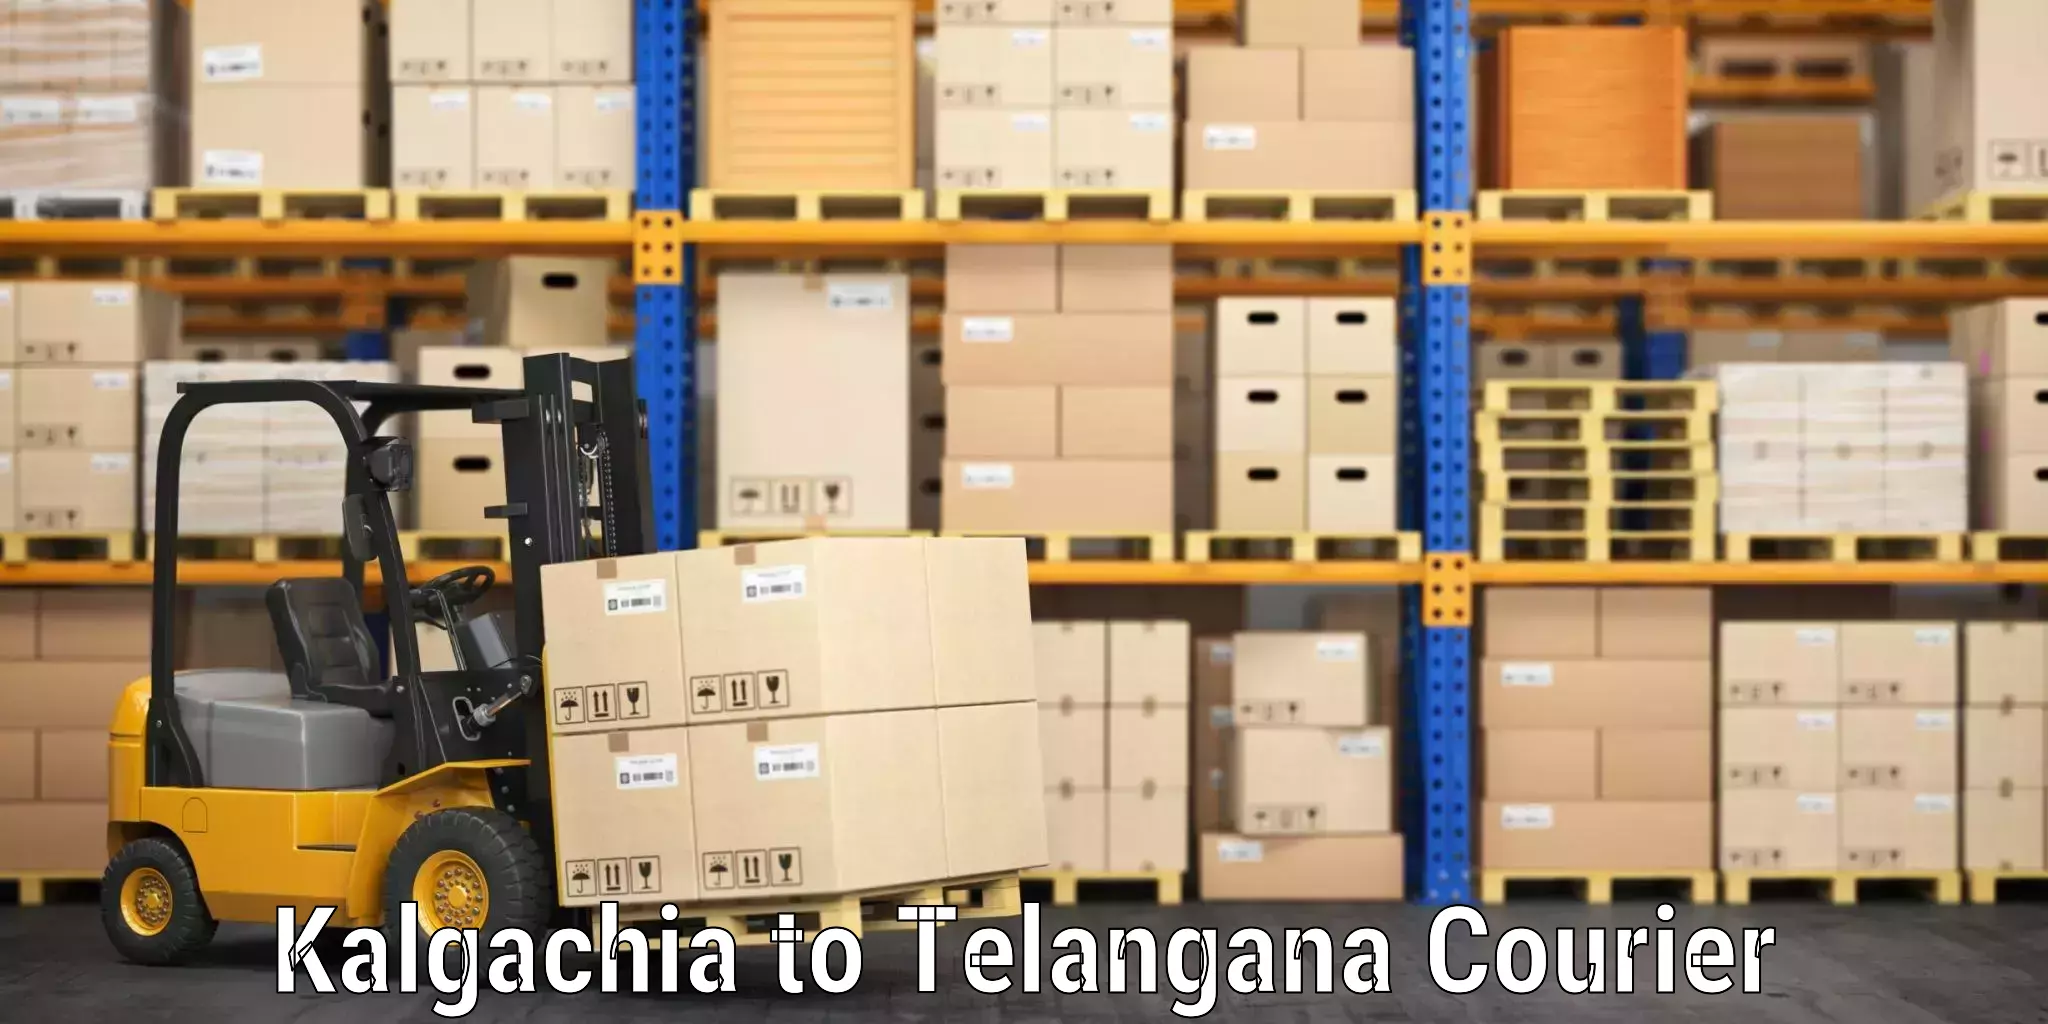 Luggage courier network Kalgachia to Vemulawada